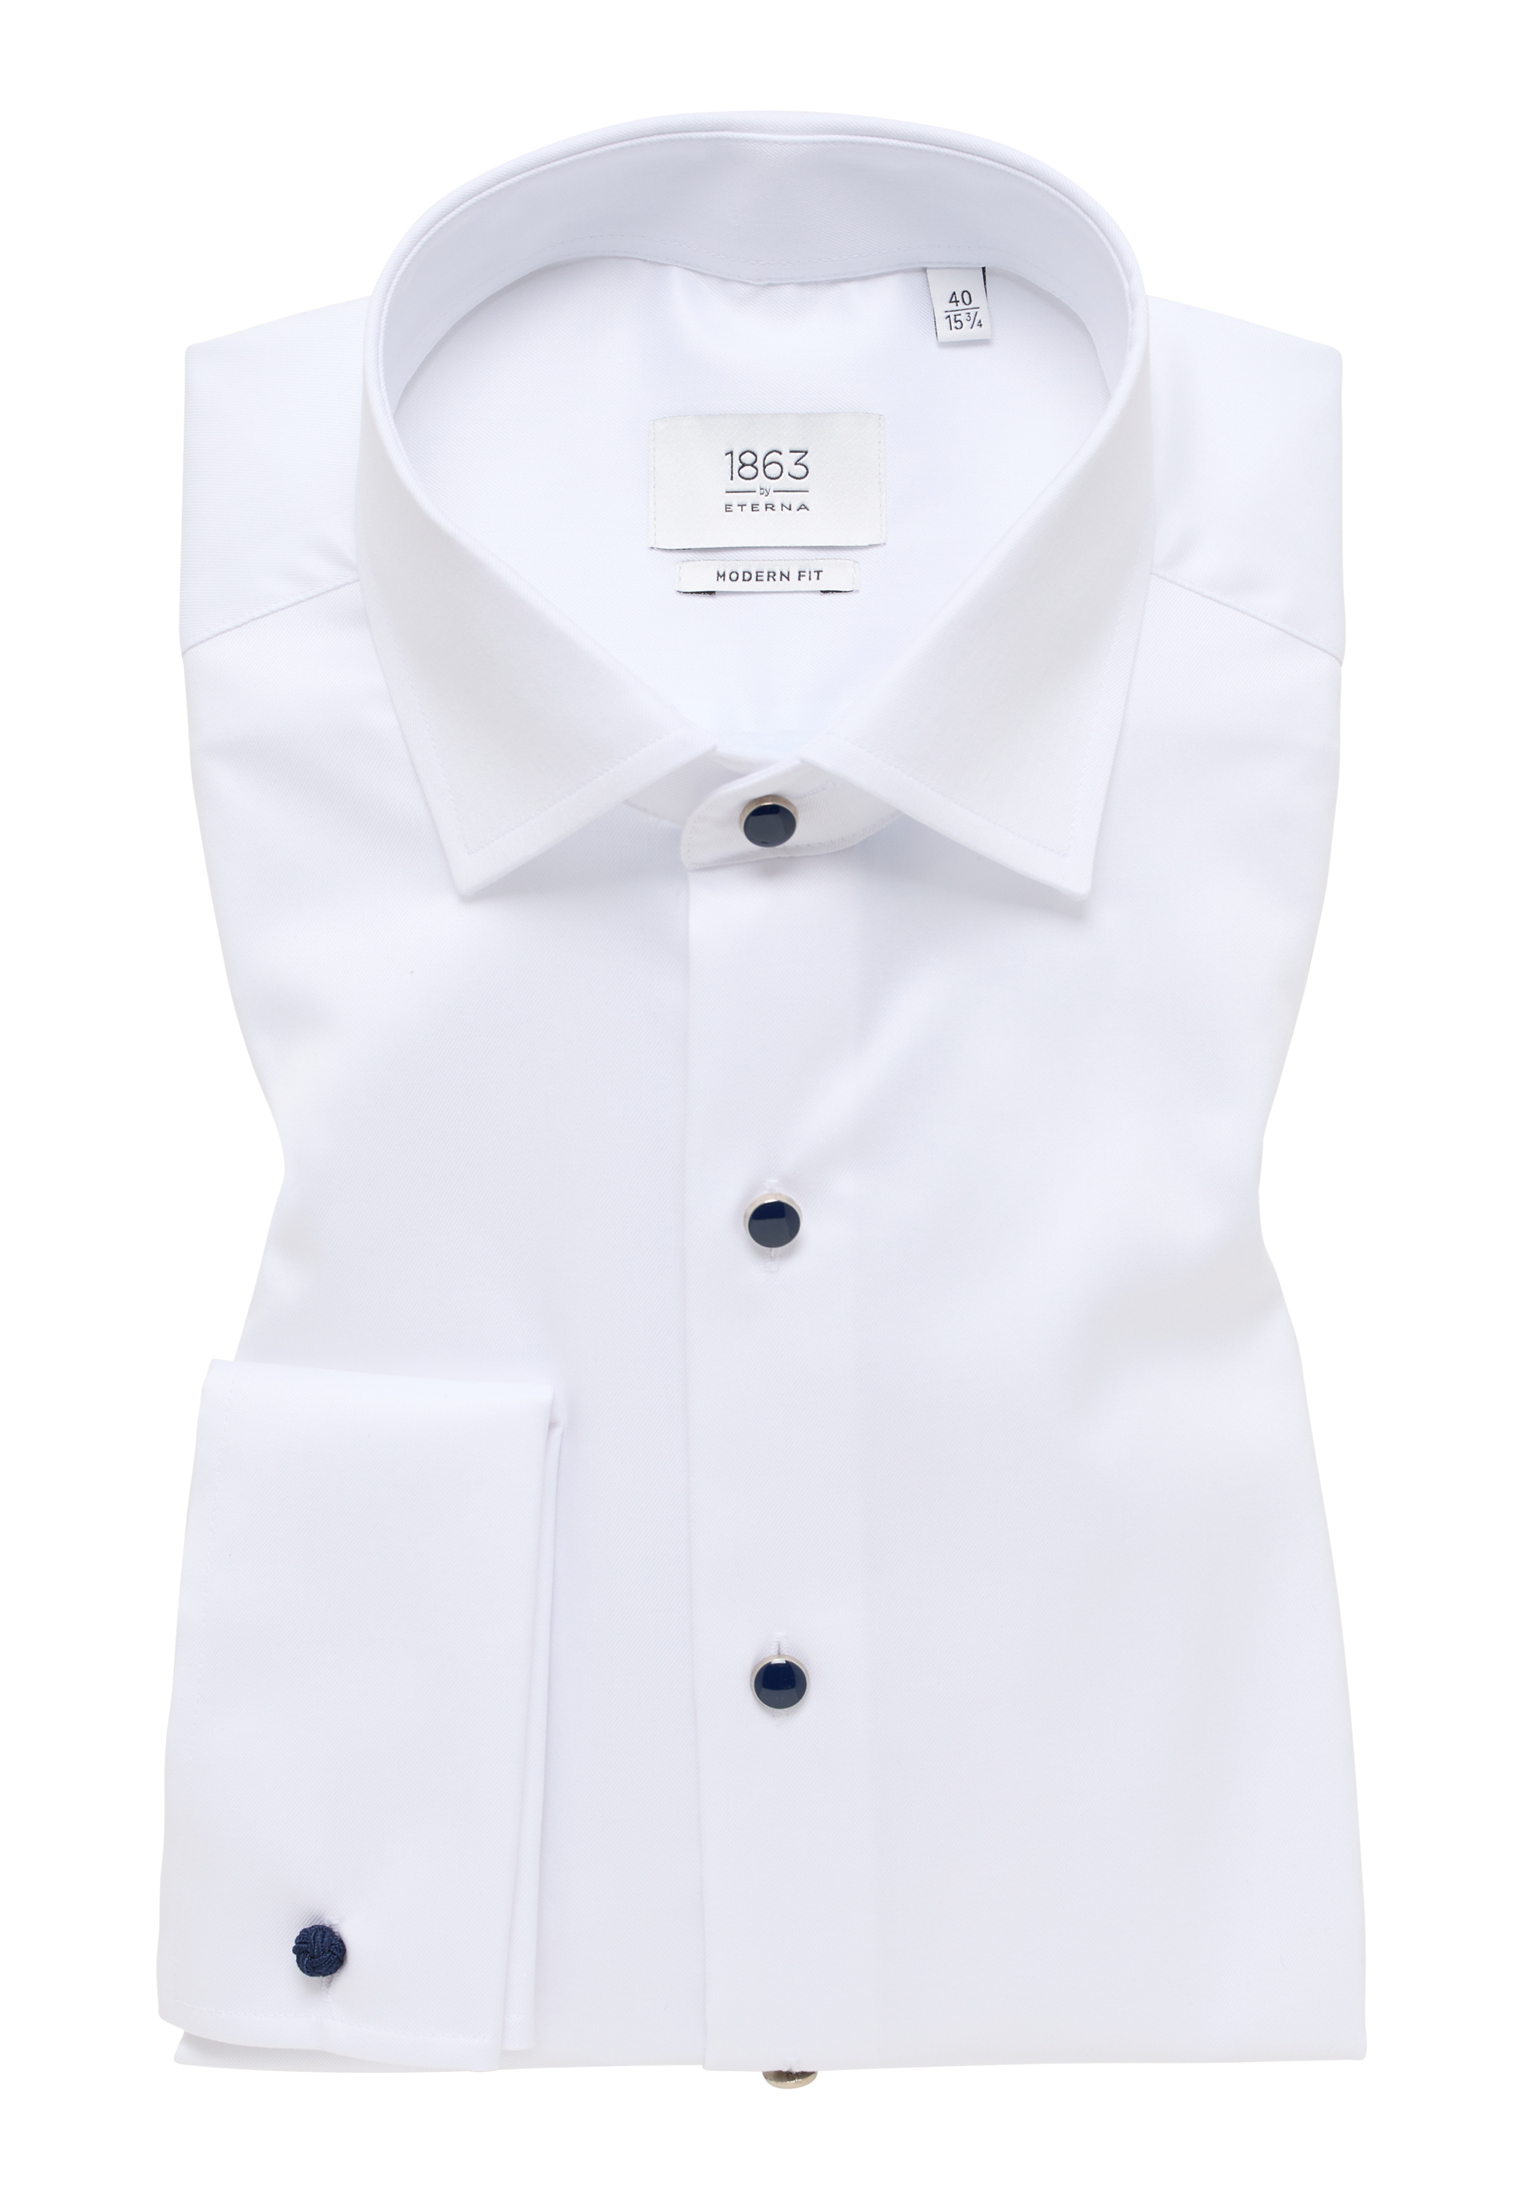 MODERN FIT Luxury Shirt in white plain | white | 45 | long sleeve |  1SH11469-00-01-45-1/1